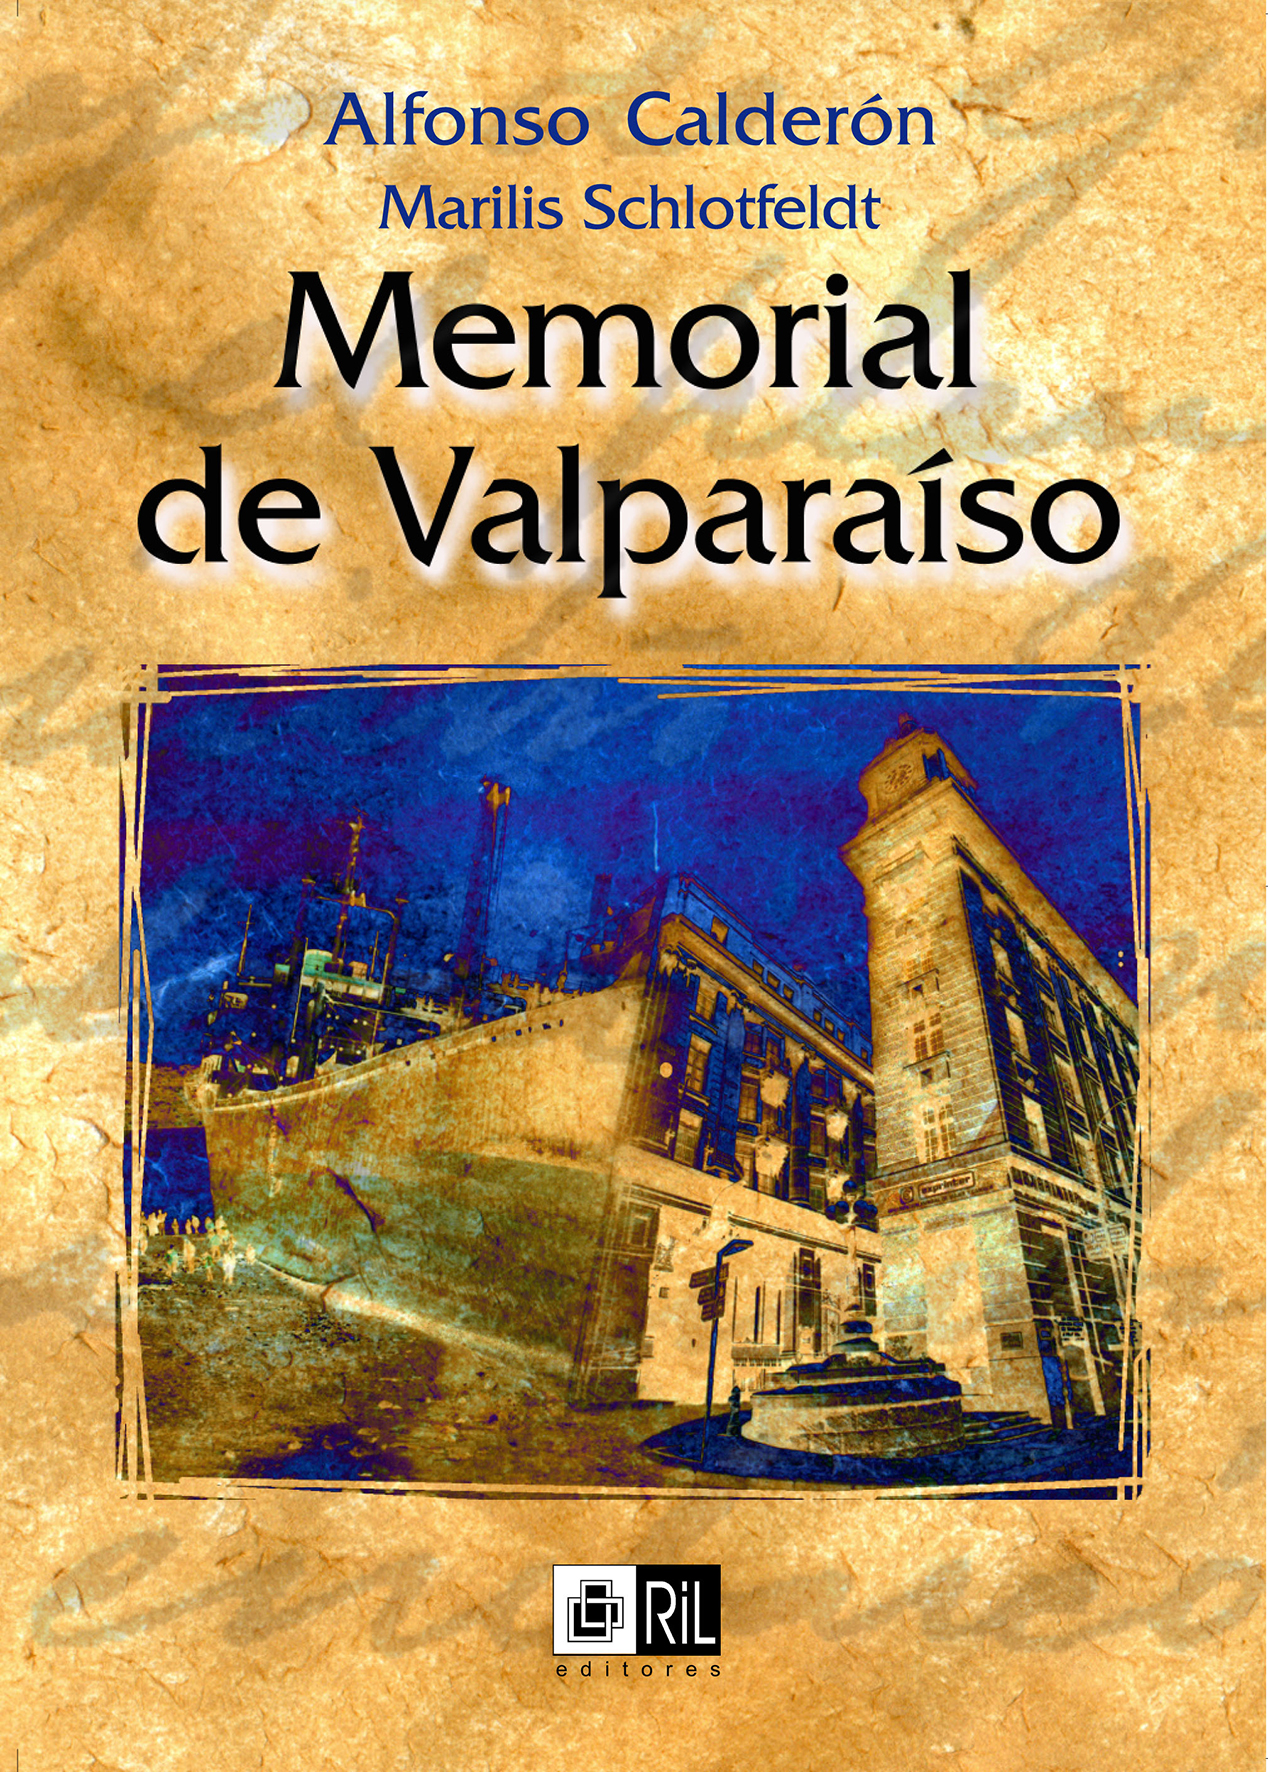 Memorial de Valparaíso 1